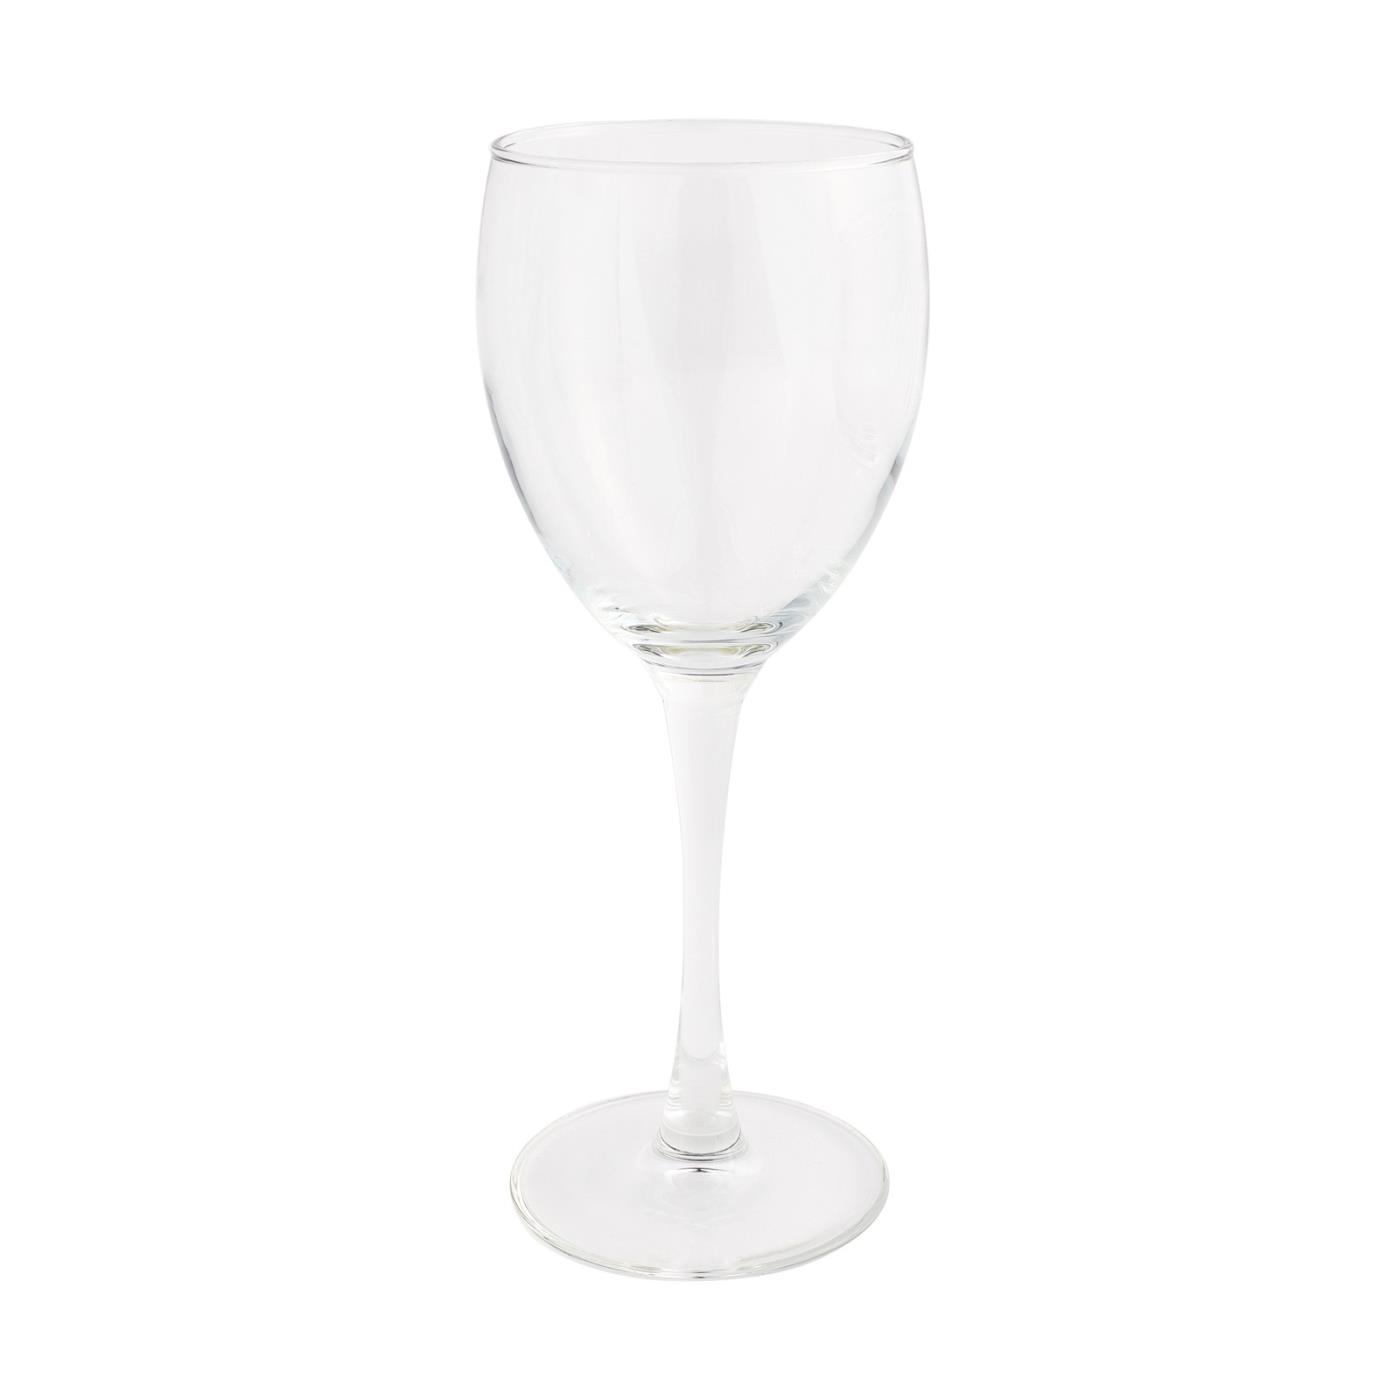 European Collection -  White Wine Glass 8 oz